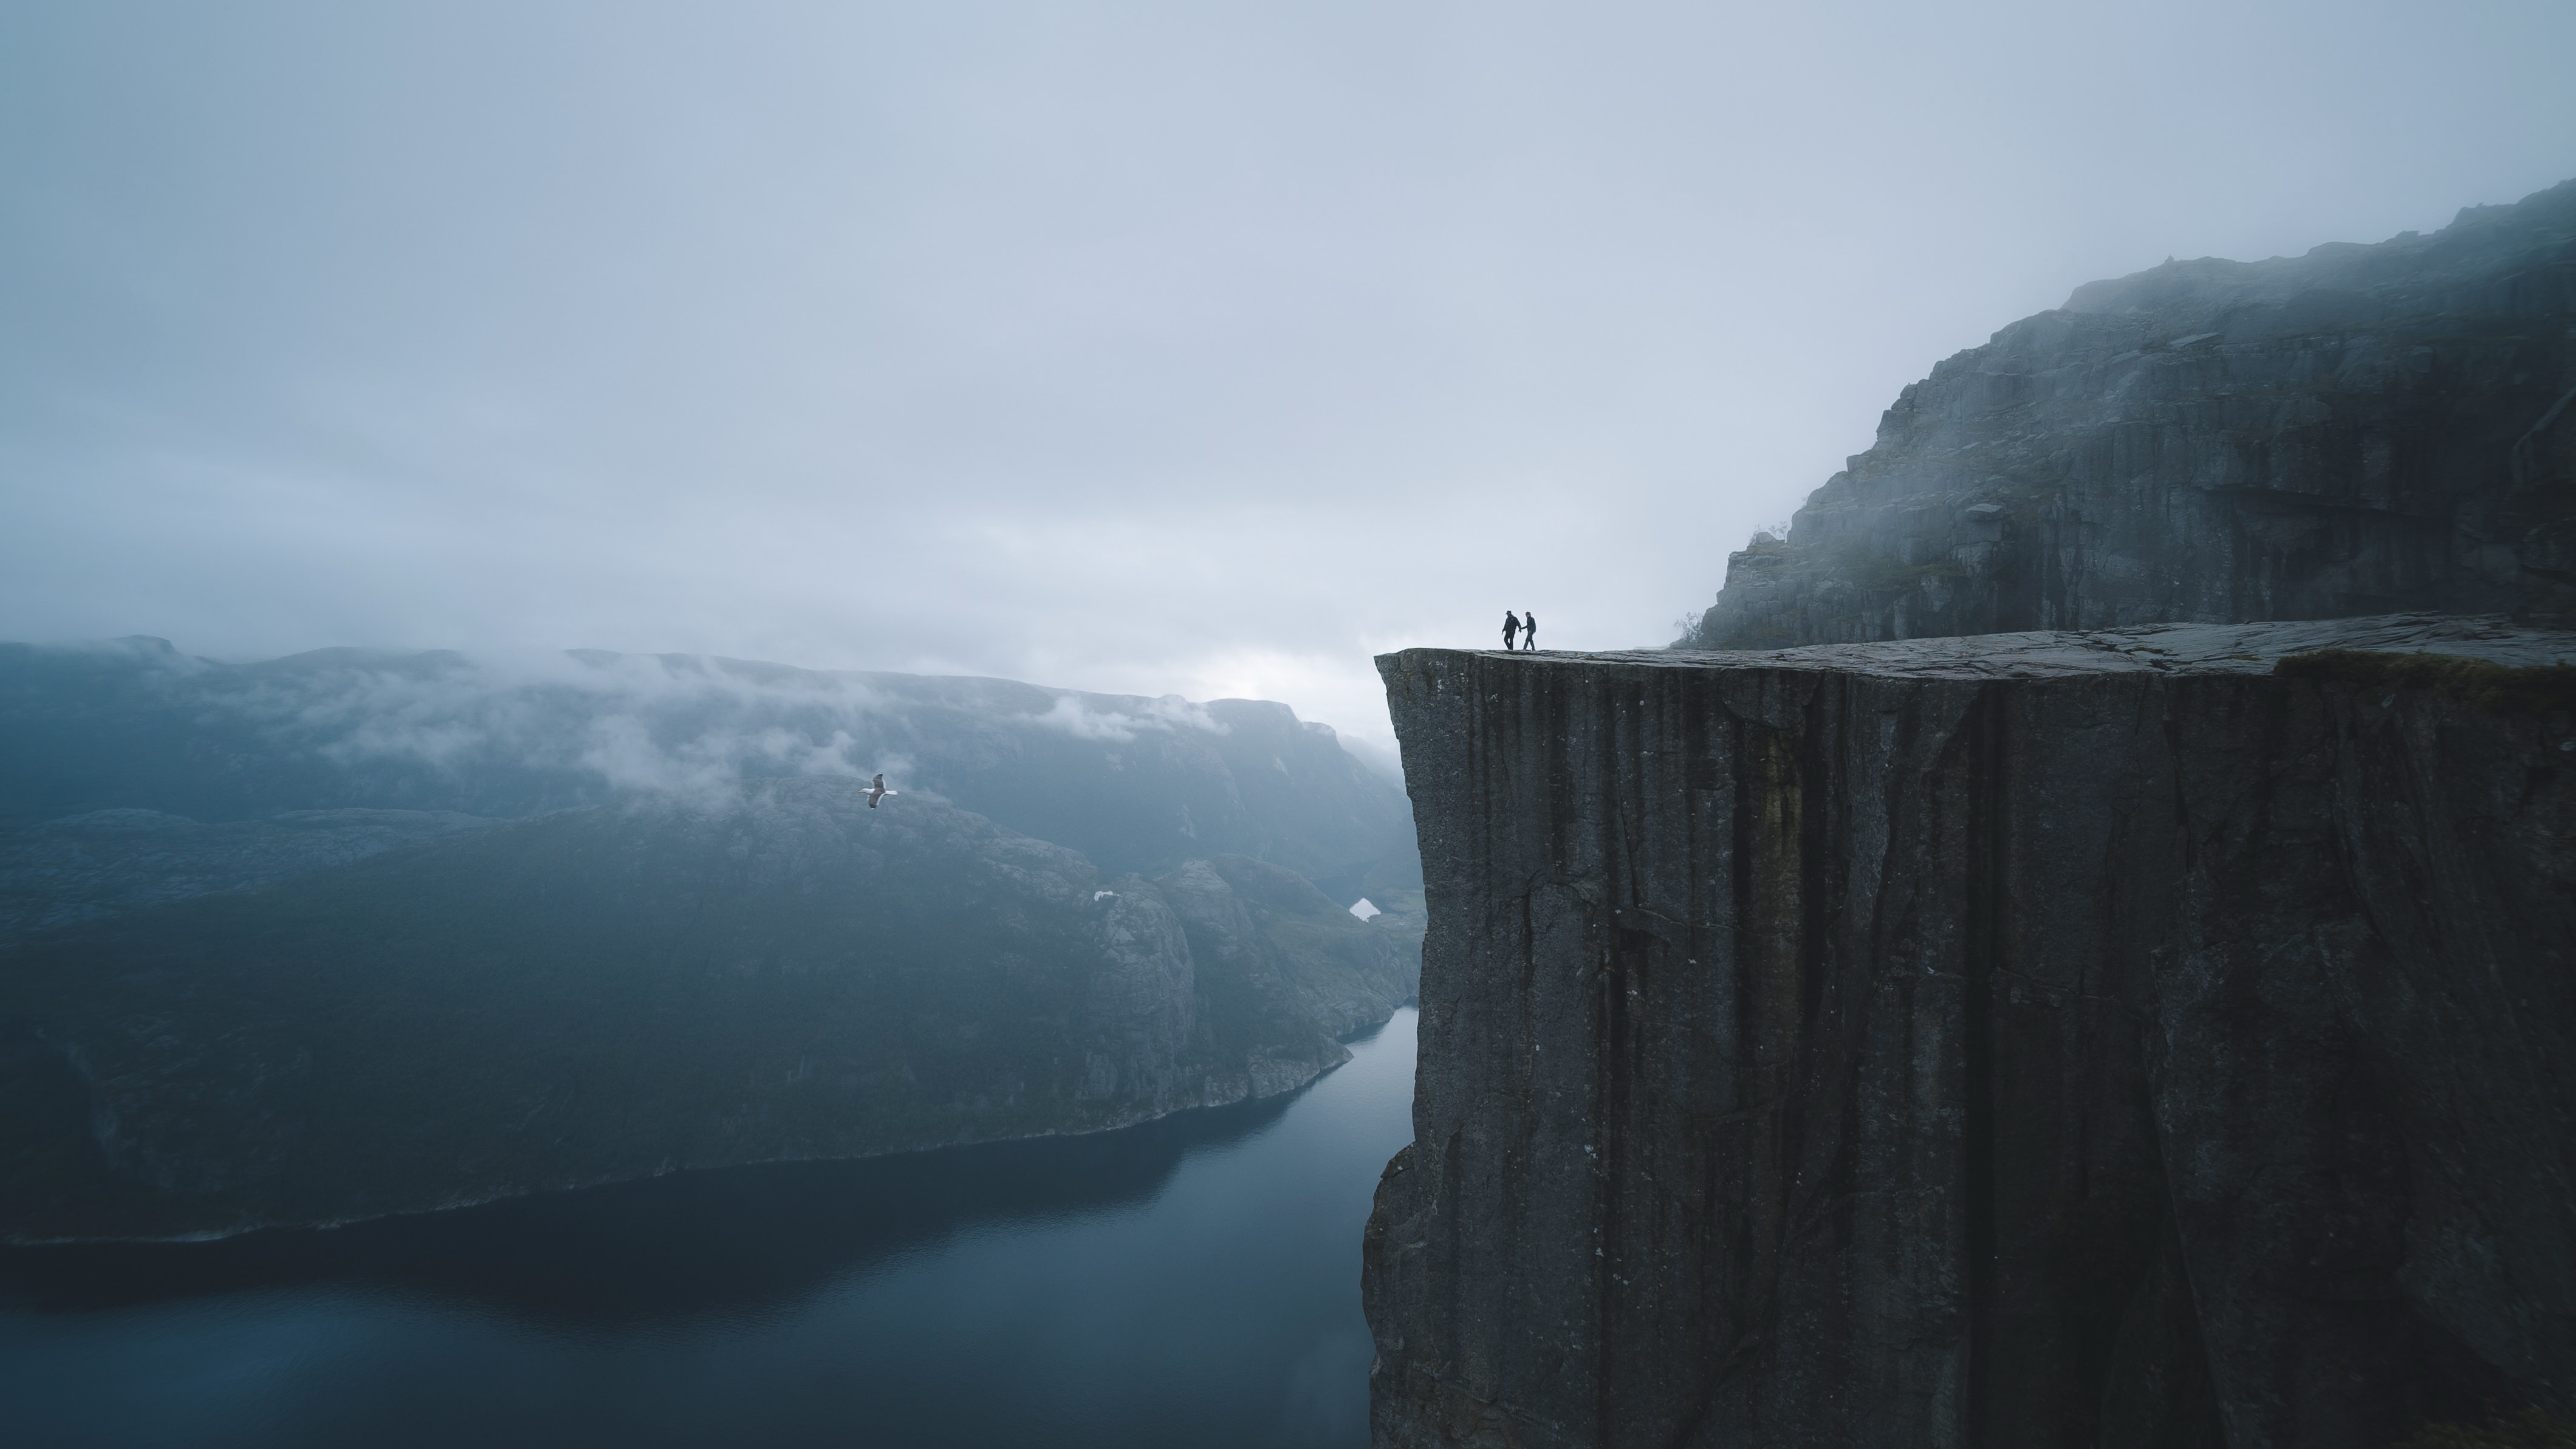 precipice, silhouettes, nature, lake, fog, break, cliff